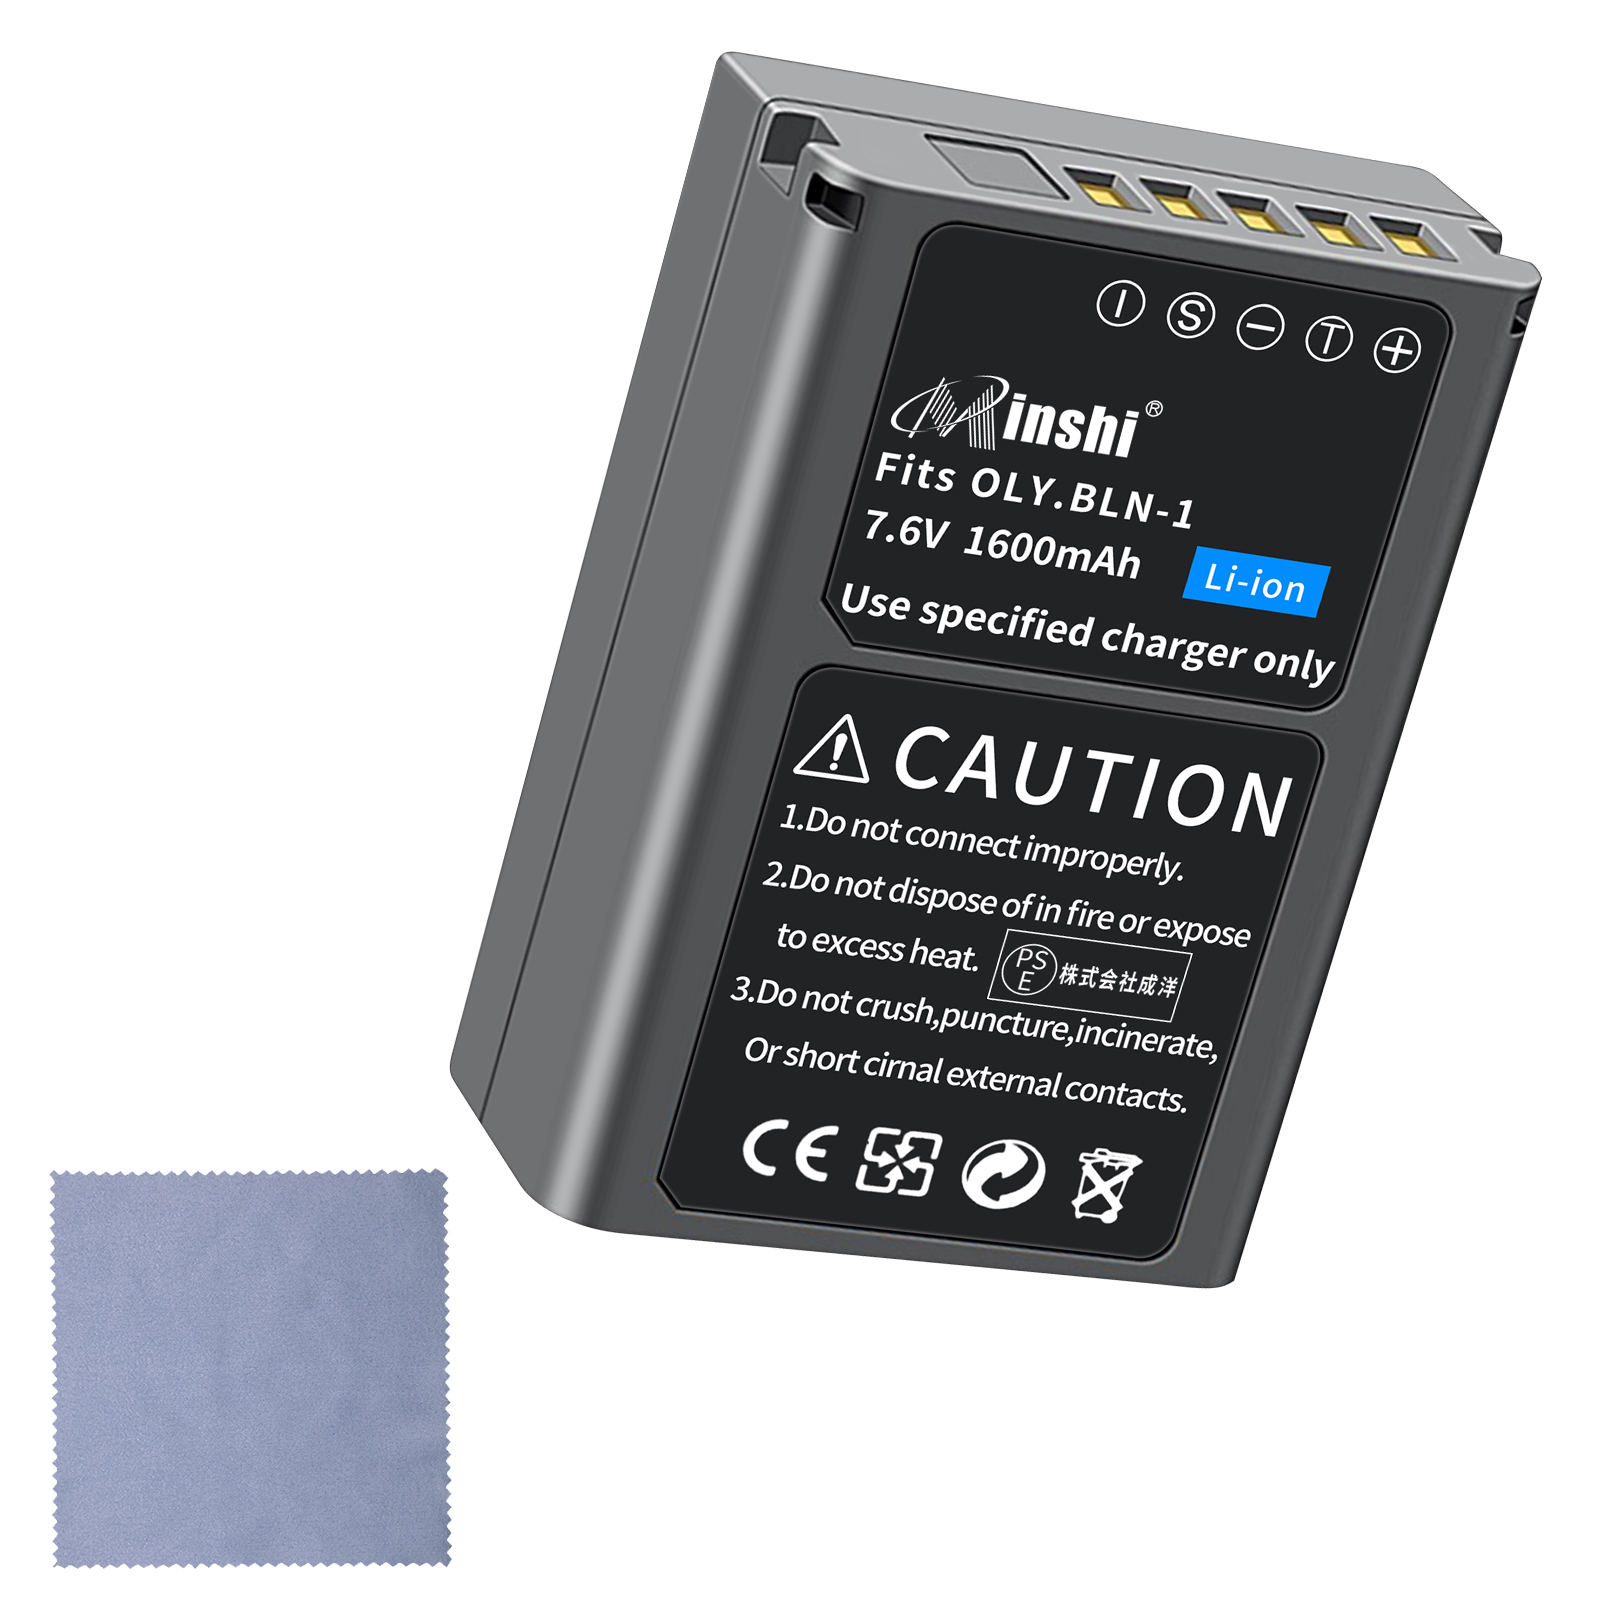 【清潔布ー付】minshi OLYMPUS OM-D E-M5 対応 互換バッテリー 1600mAh 高品質 BLN-1 交換用バッテリー オリジナル充電器との互換性がない